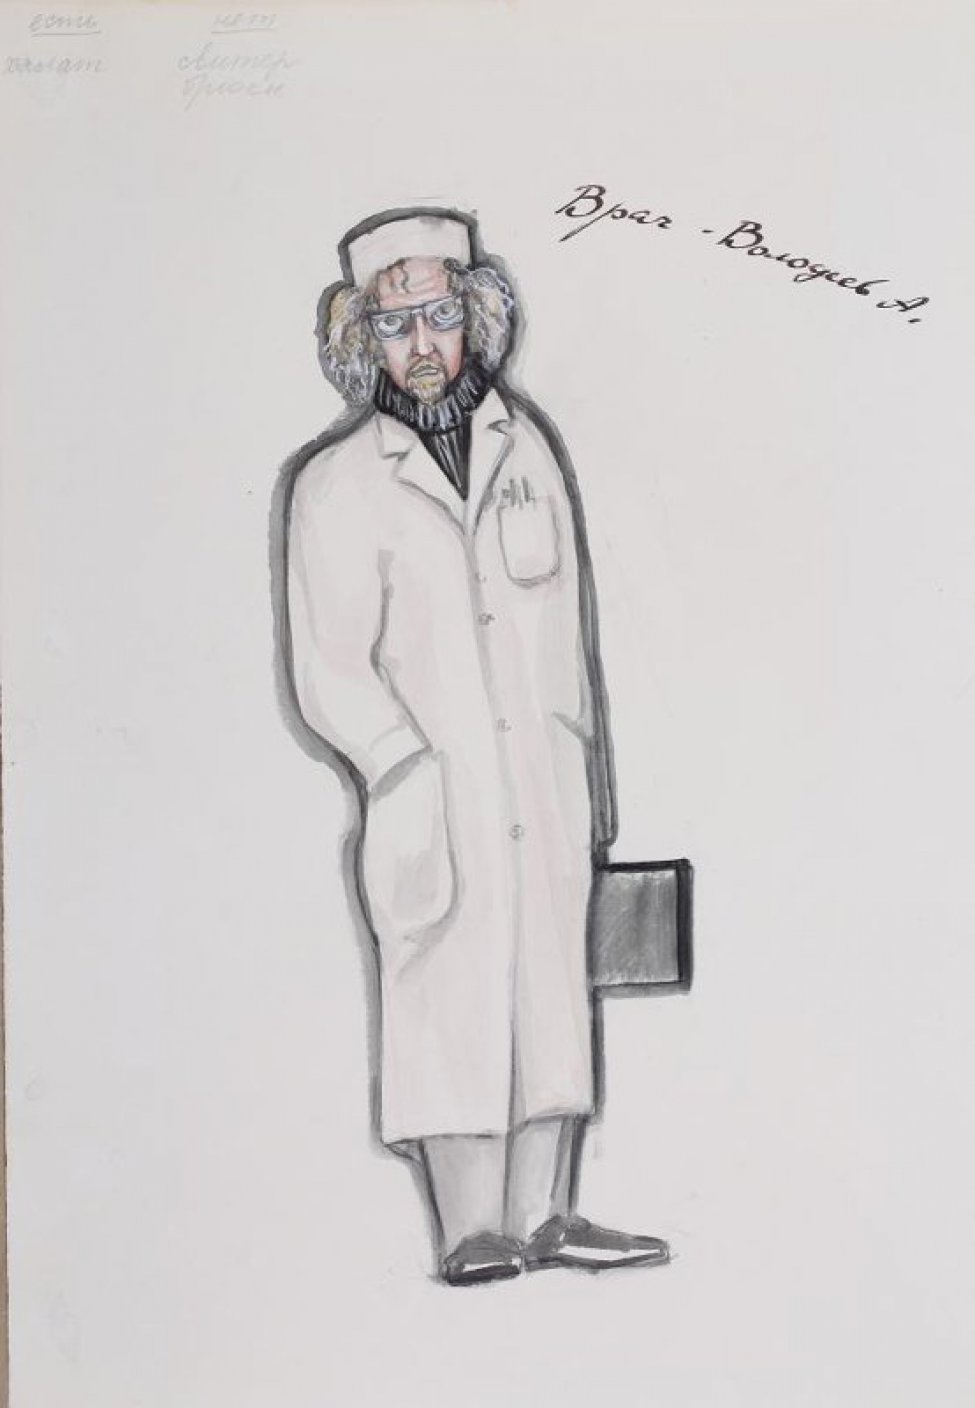 Изображен мужчина средних лет в очках, с небольшой бородкой, в длинном белом халате, темном свитере и белой шапочке. В левой руке - черный портфель.